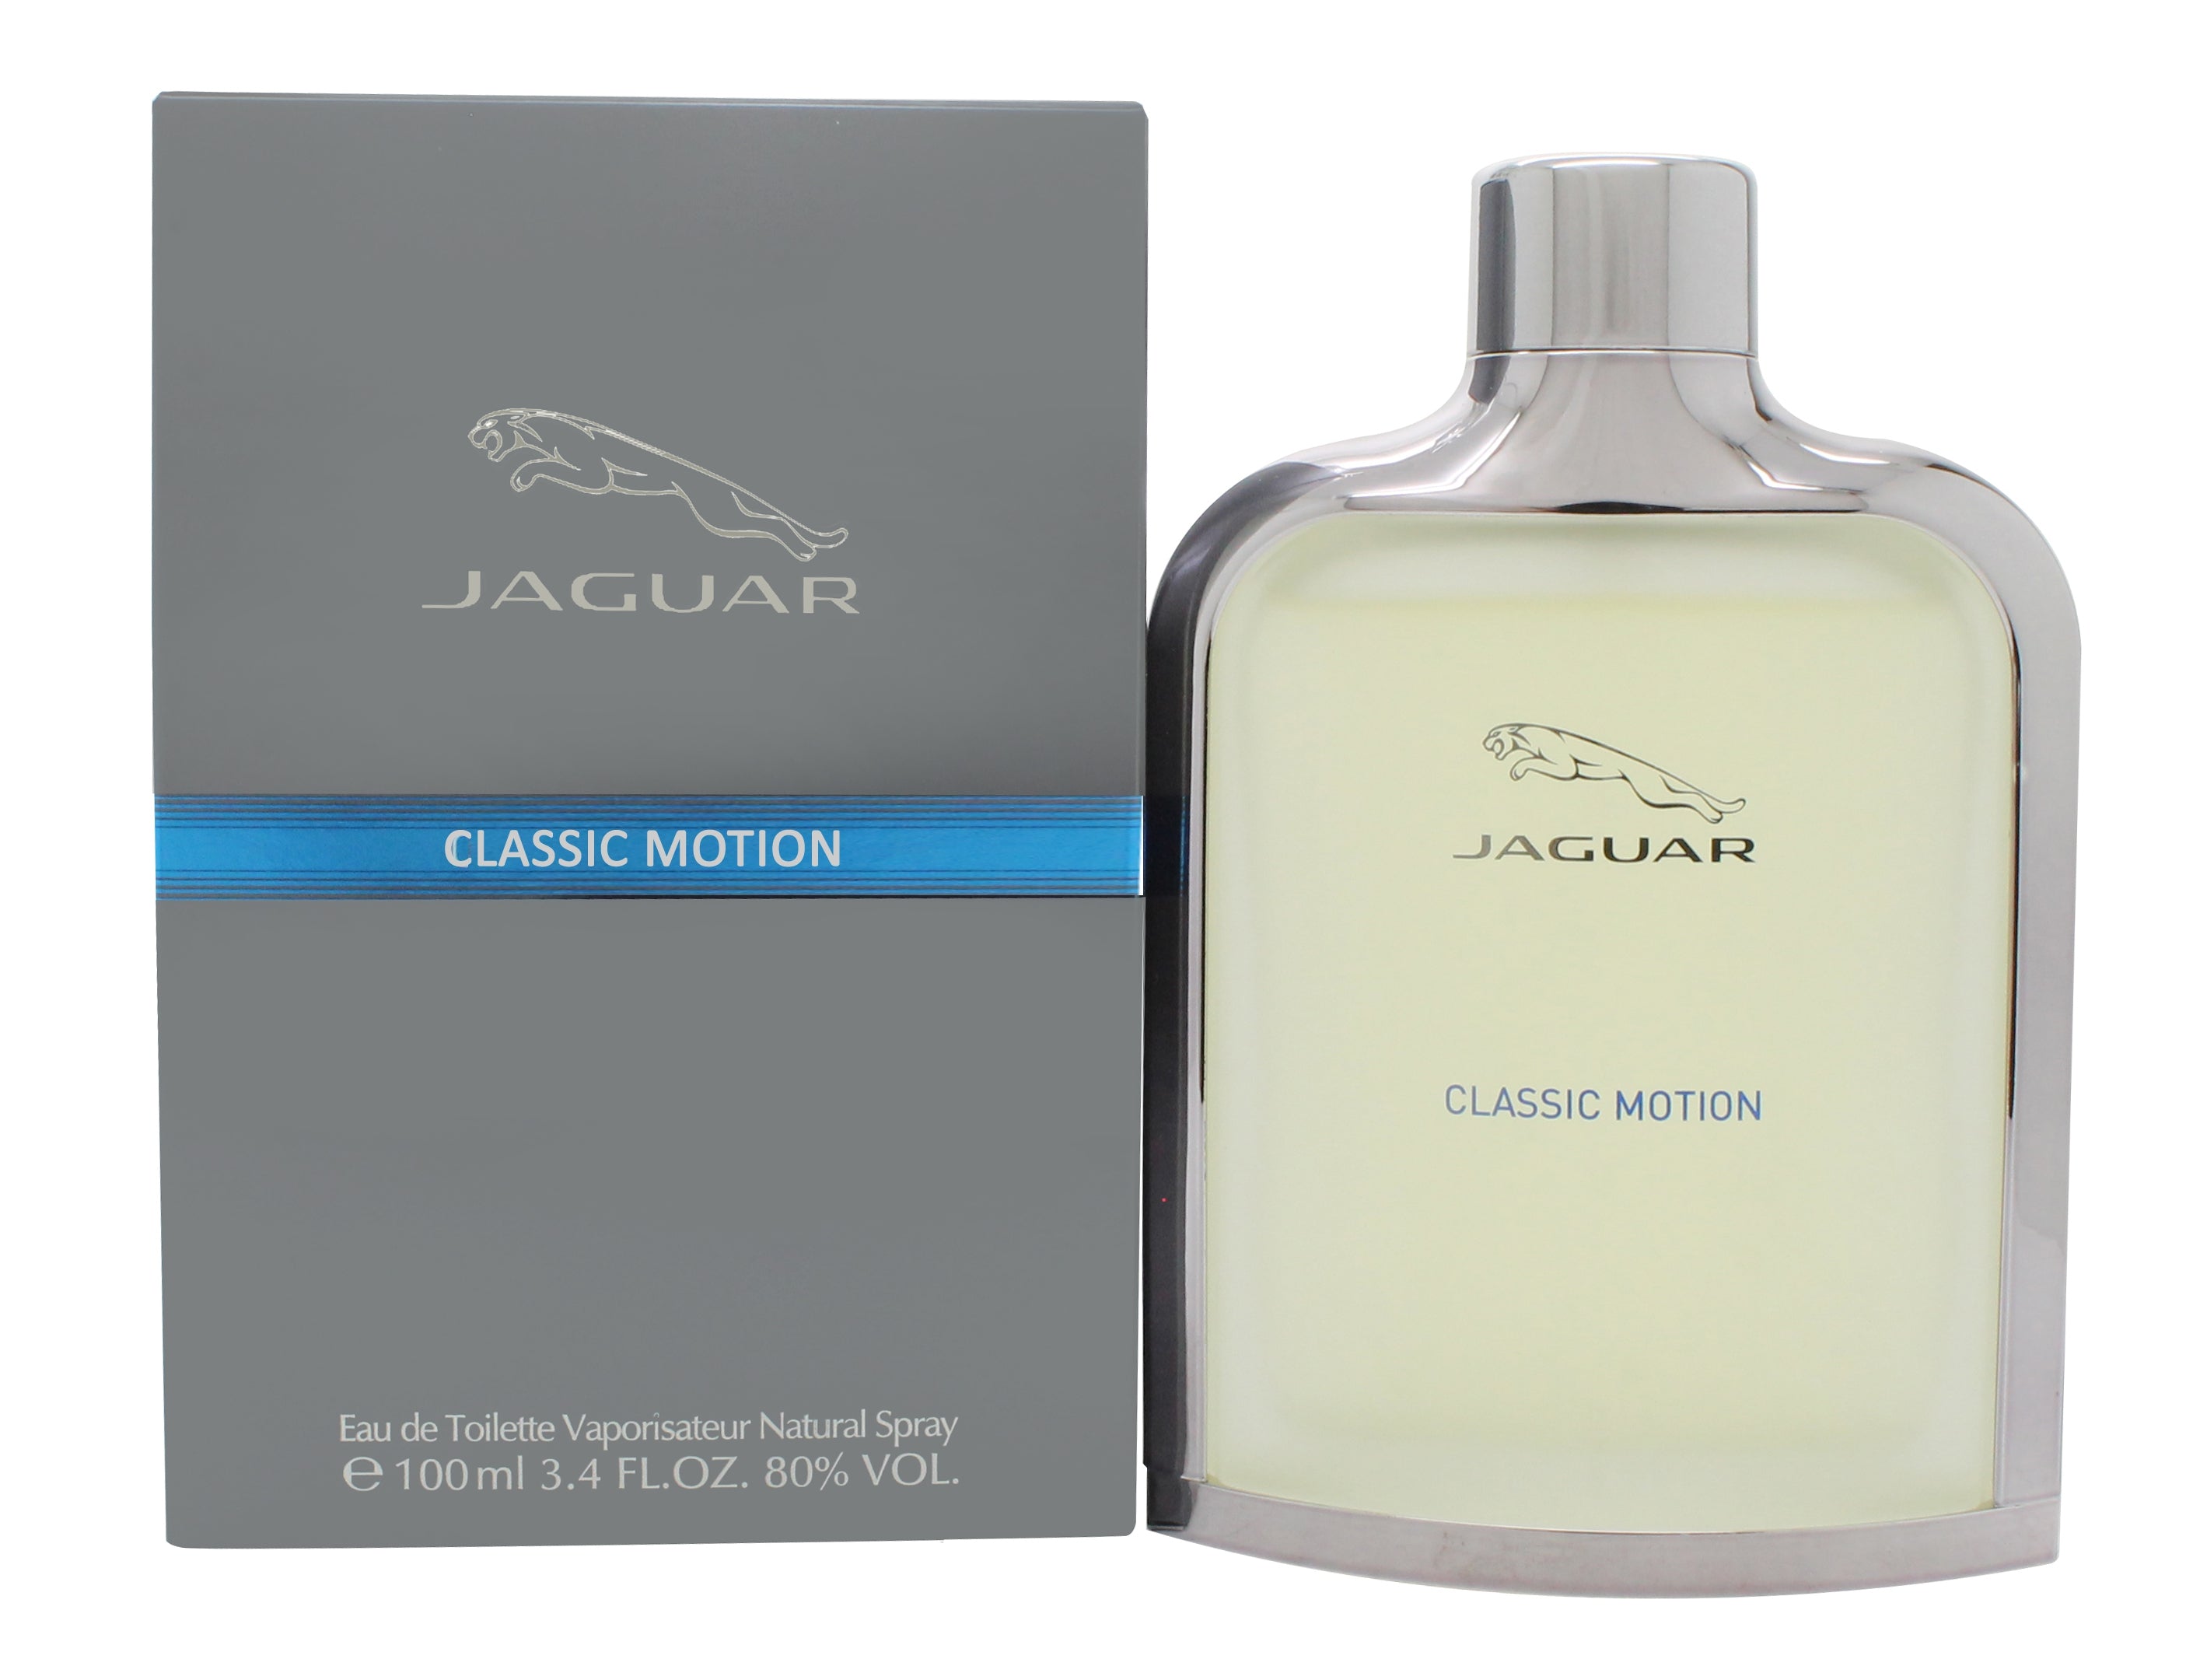 View Jaguar Classic Motion Eau de Toilette 100ml Spray information